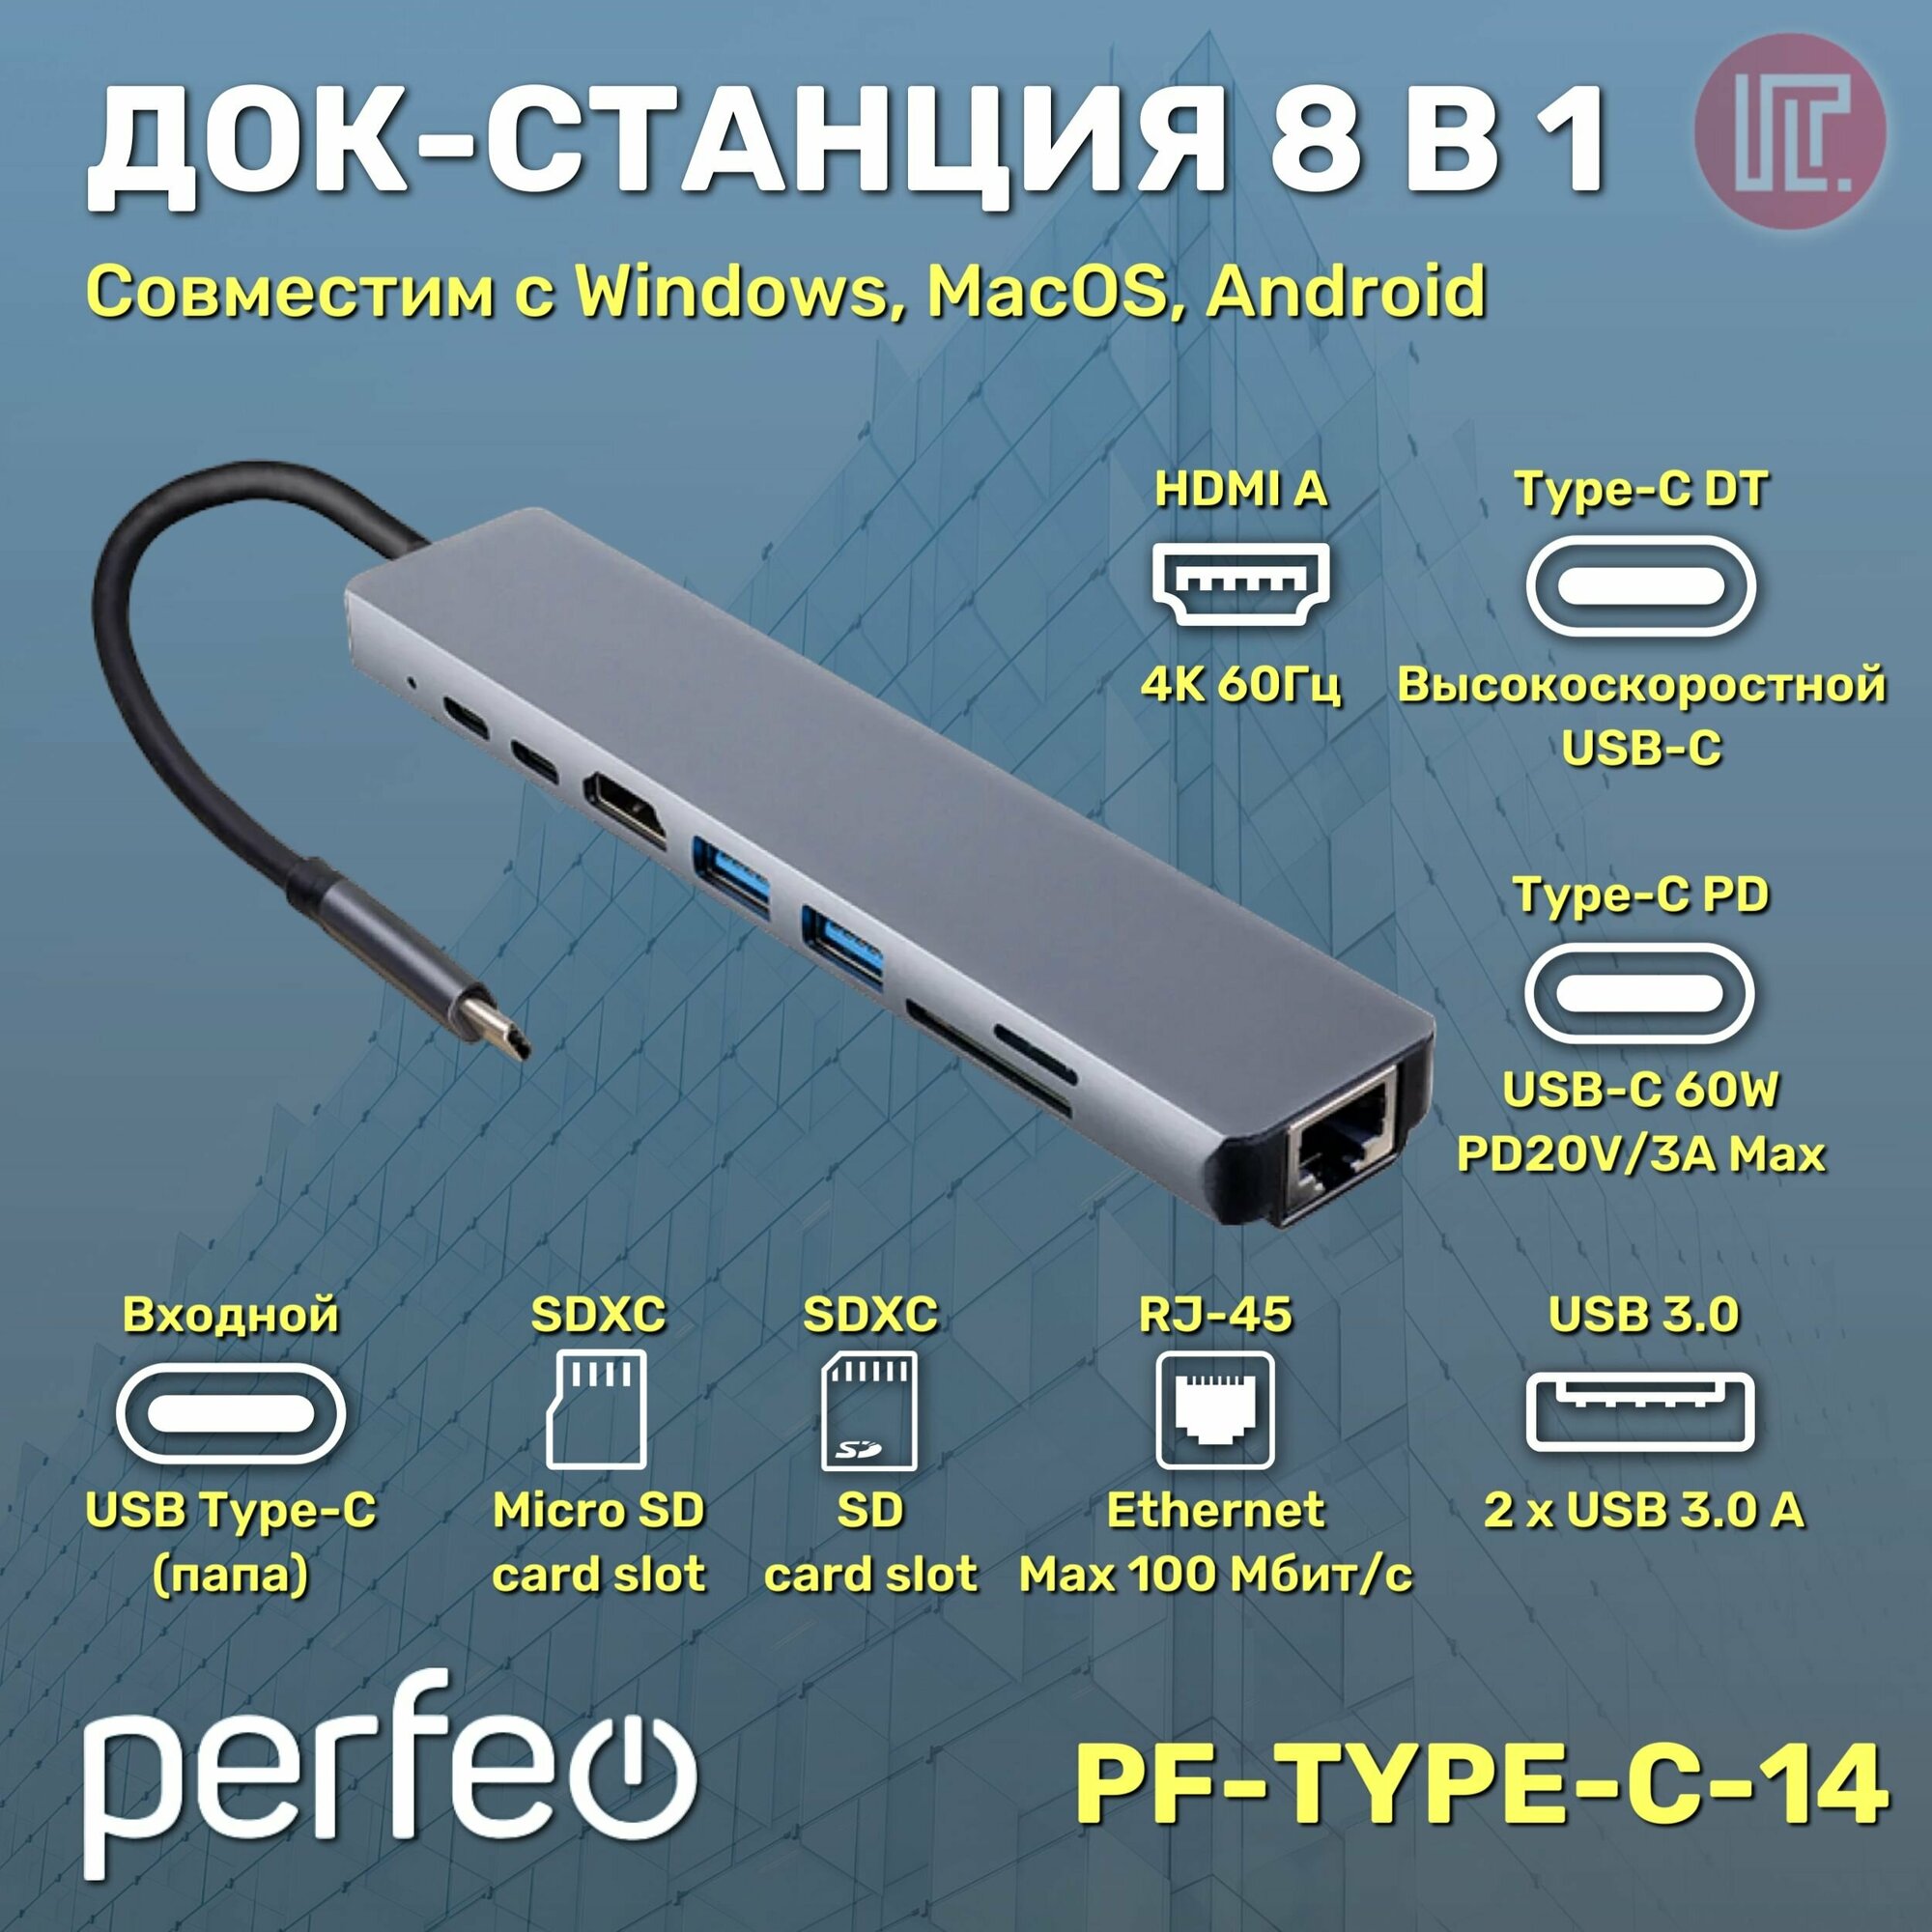 Концентратор USB PERFEO Type-C dock. station 8 in 1 (PF-Type-C-14)